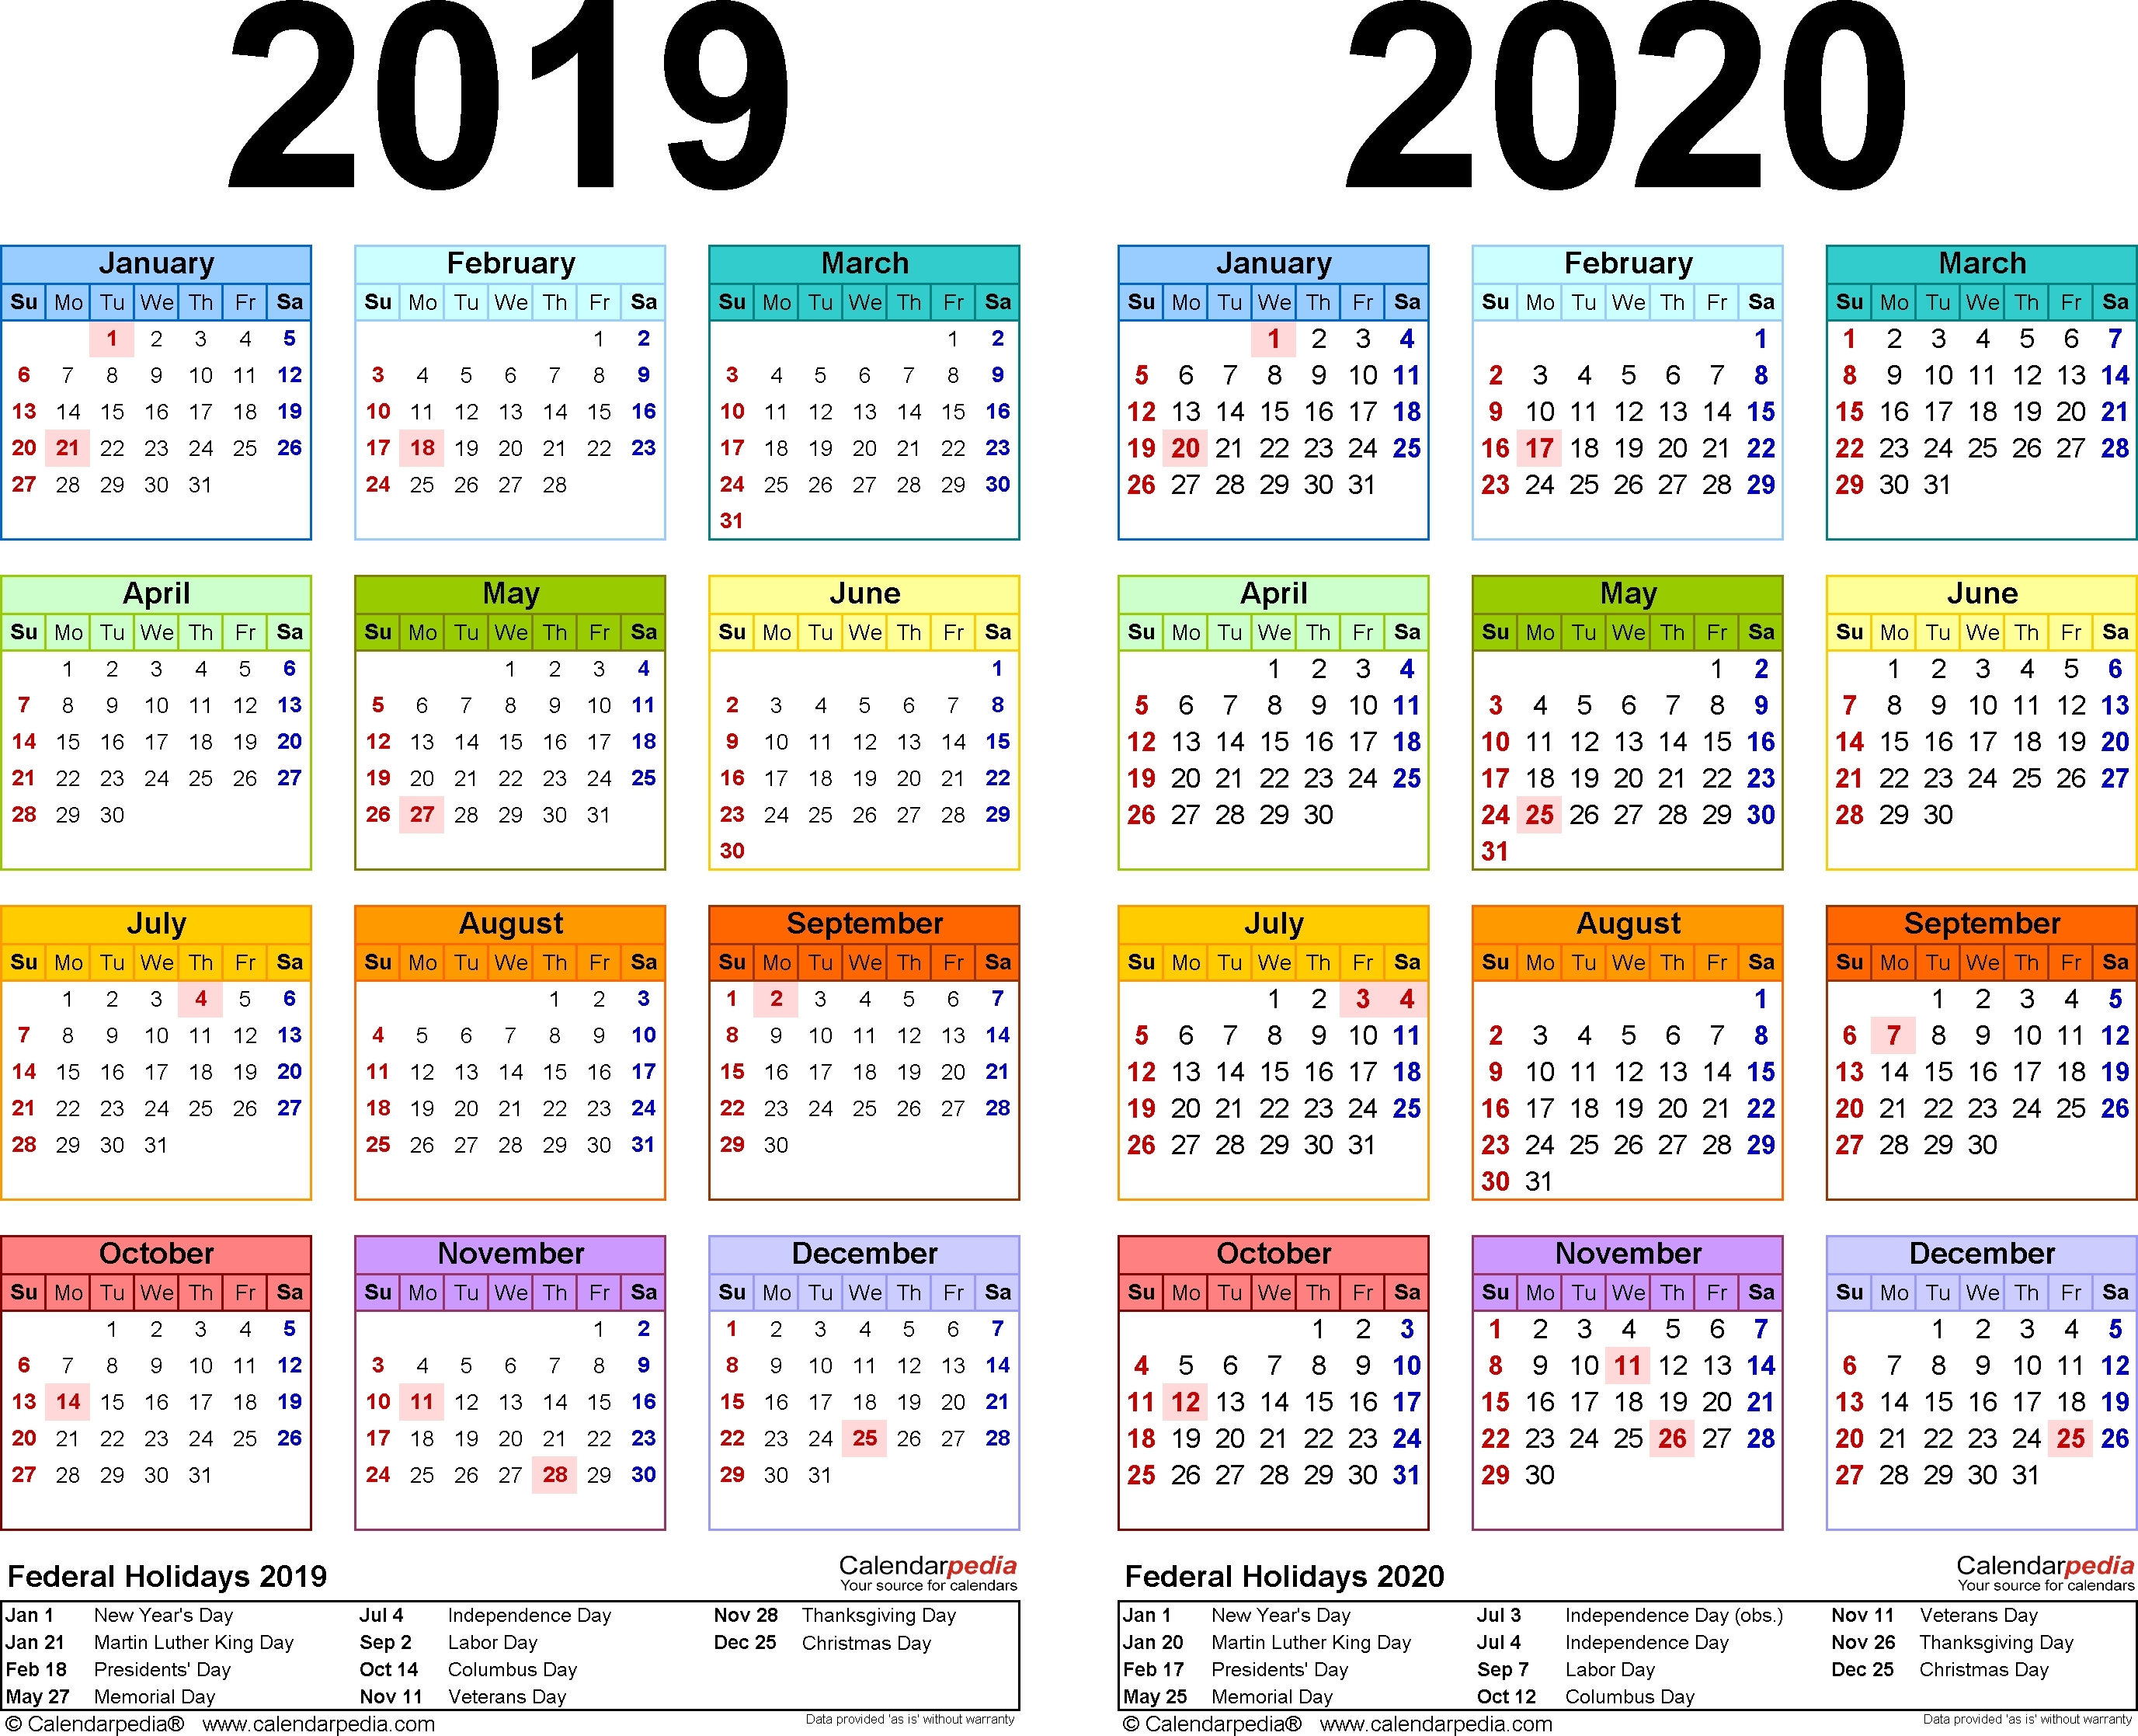 Hong Kong Calendar 2020 | Free Printable Calendar